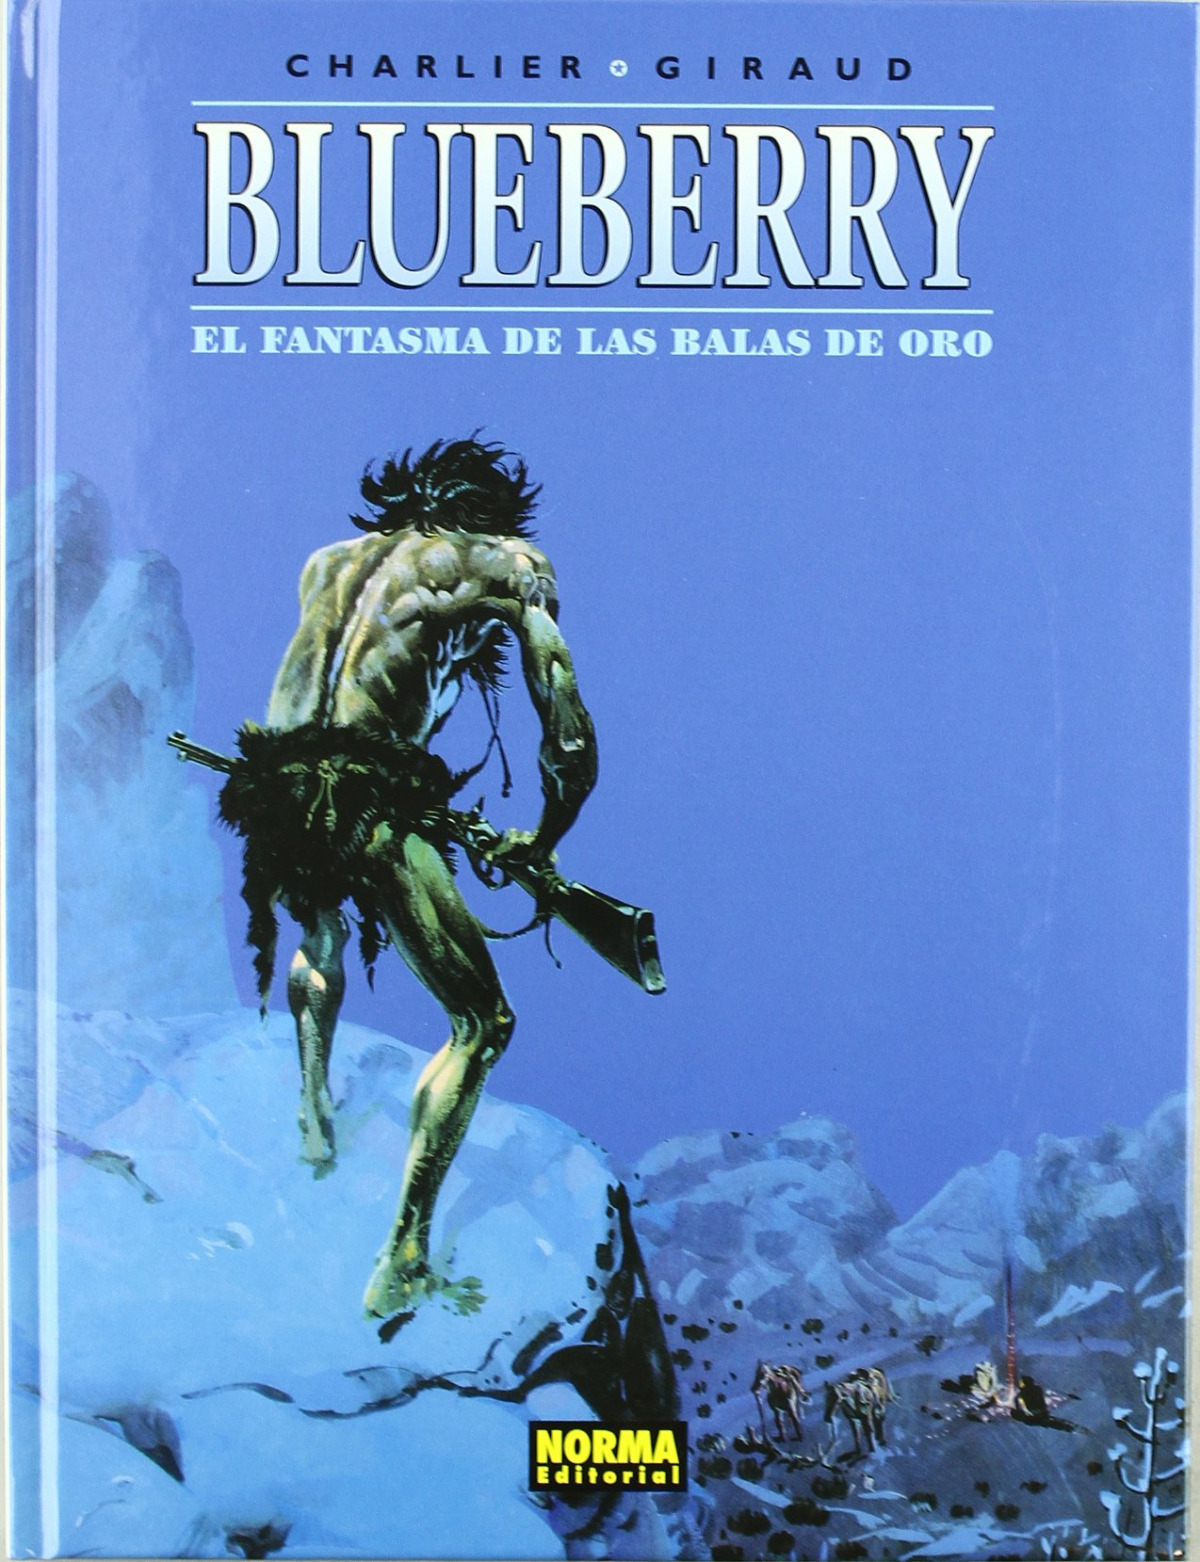 Blueberry 2 - el fantasma balas de oro - Charlier/Giraud/Otros autores